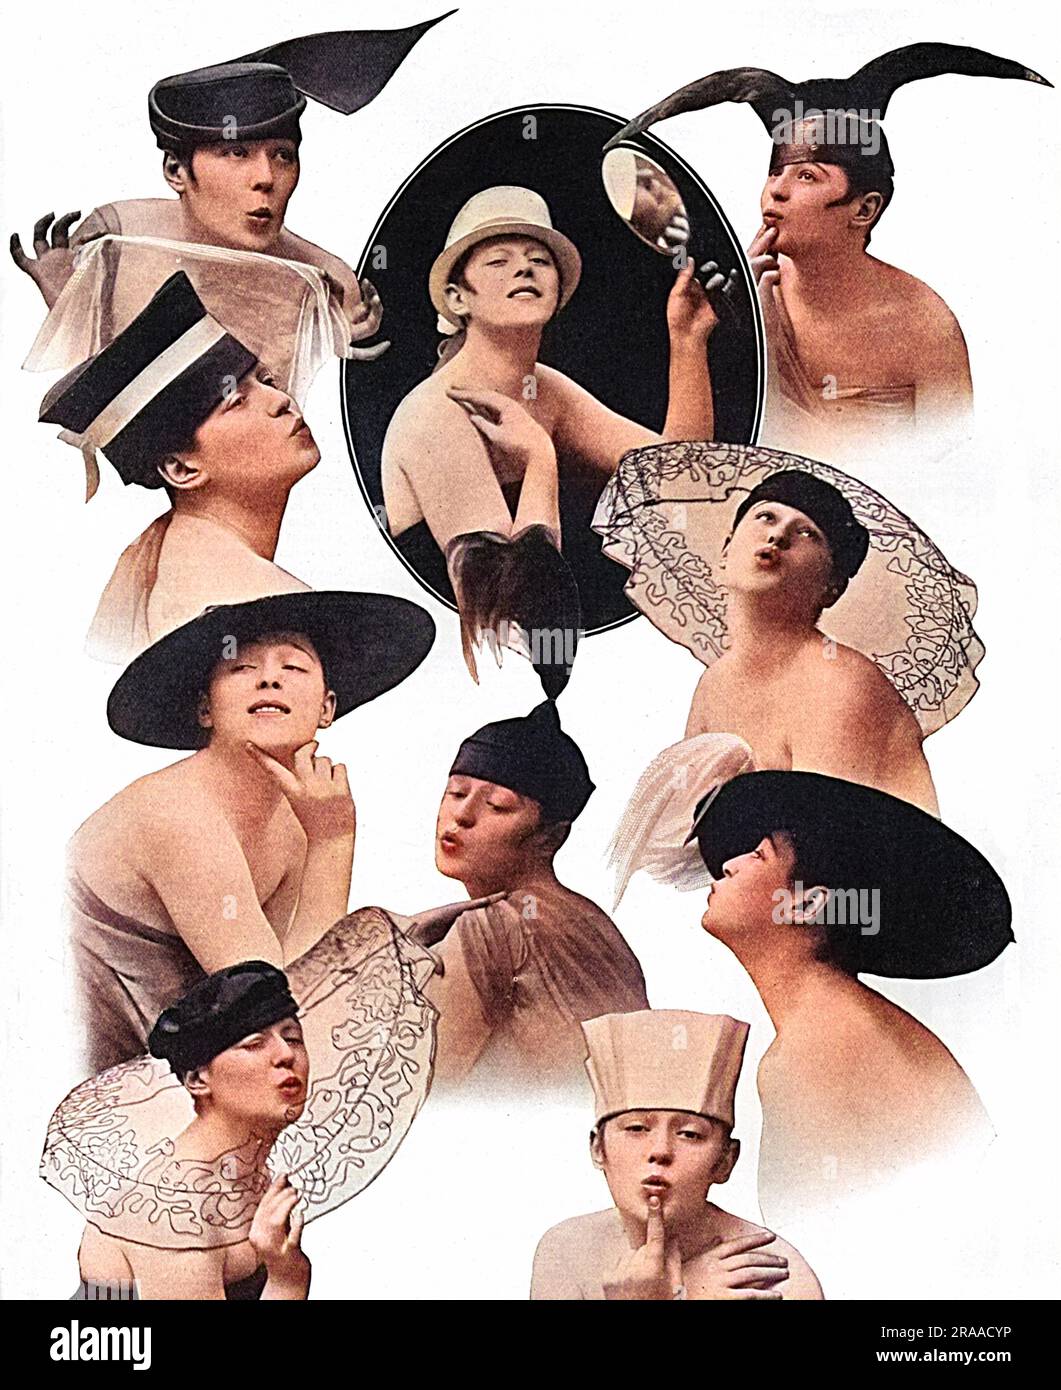 Une variété de chapeaux flamboyants et excentriques disponibles chez Maison Lewis, inspirés par le personnage Eve, chroniqueur de potins fictif du magazine Tatler, dont la renommée s'étendait à son propre dessin dans la revue, 'Tina' à l'Adelphi en 1916, où Phyllis Dare et le reste de la troupe, Portait une variété de costumes stylisés basés sur la garde-robe d'Eve. Date: 1916 Banque D'Images